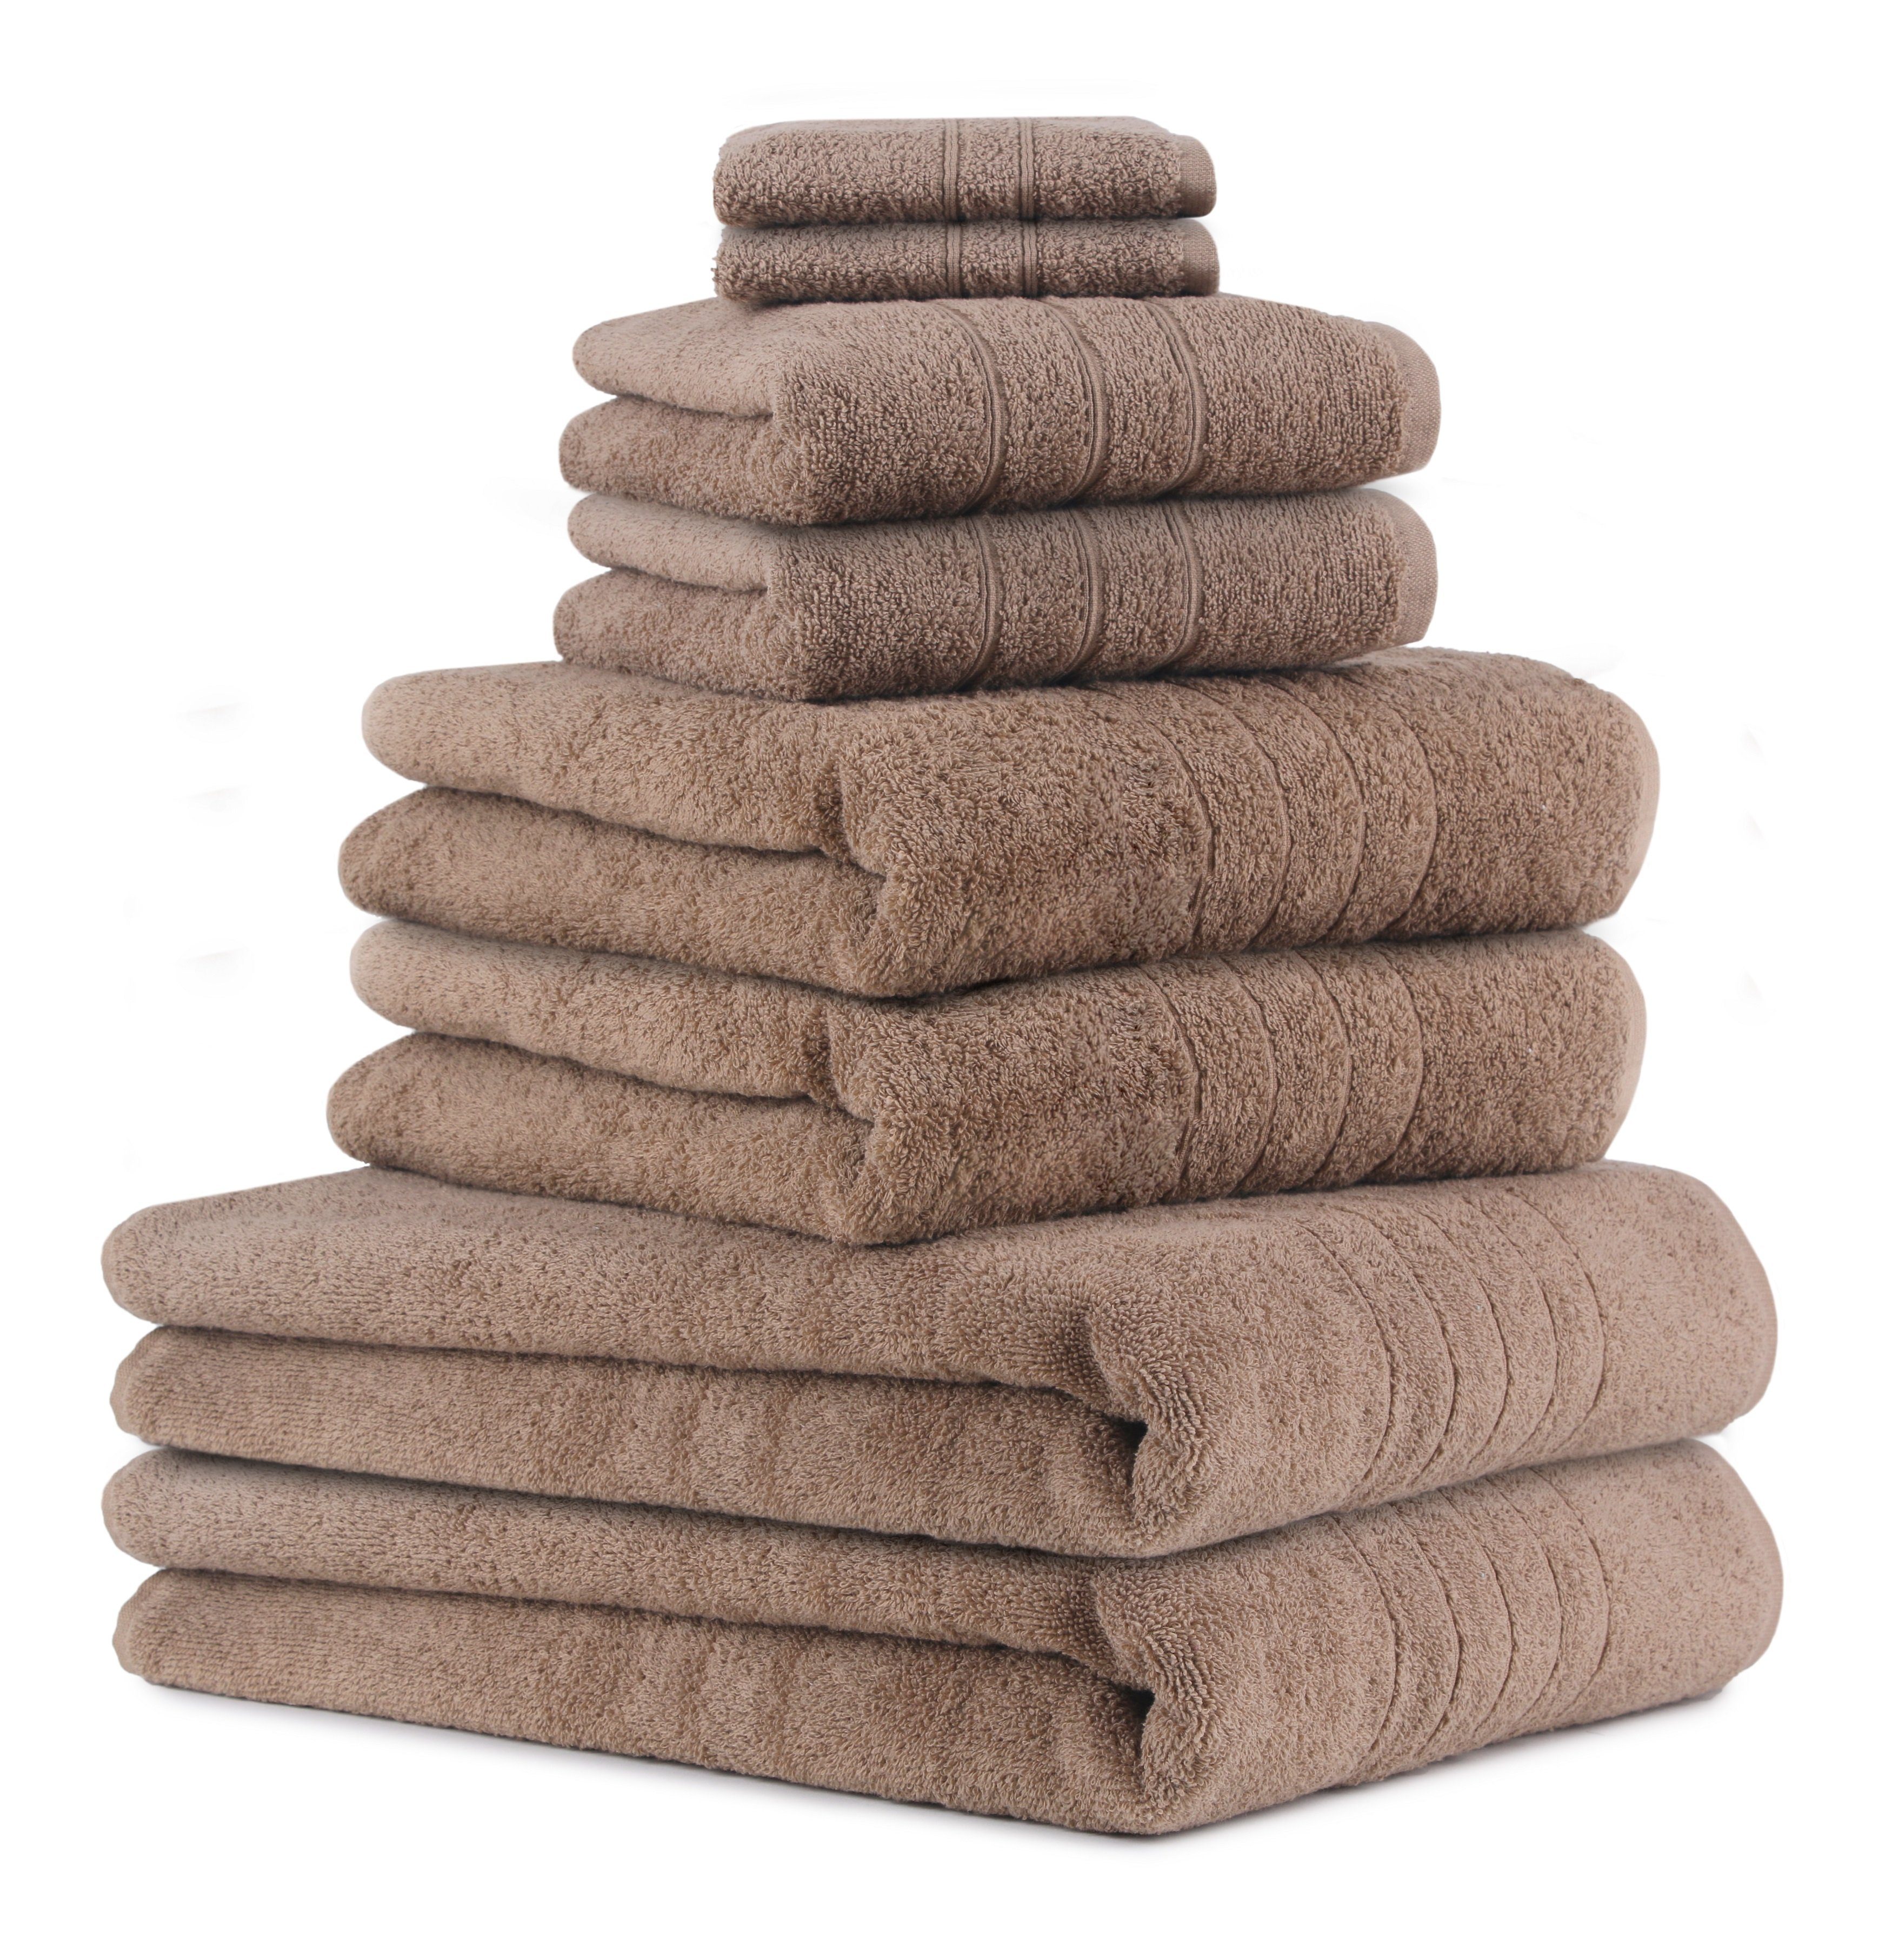 Betz Handtuch Set 8-TLG Handtuch-Set Deluxe 100% Baumwolle 2 Badetücher 2 Duschtücher 2 Handtücher 2 Seiftücher, 100% Baumwolle, (8-tlg) mokka